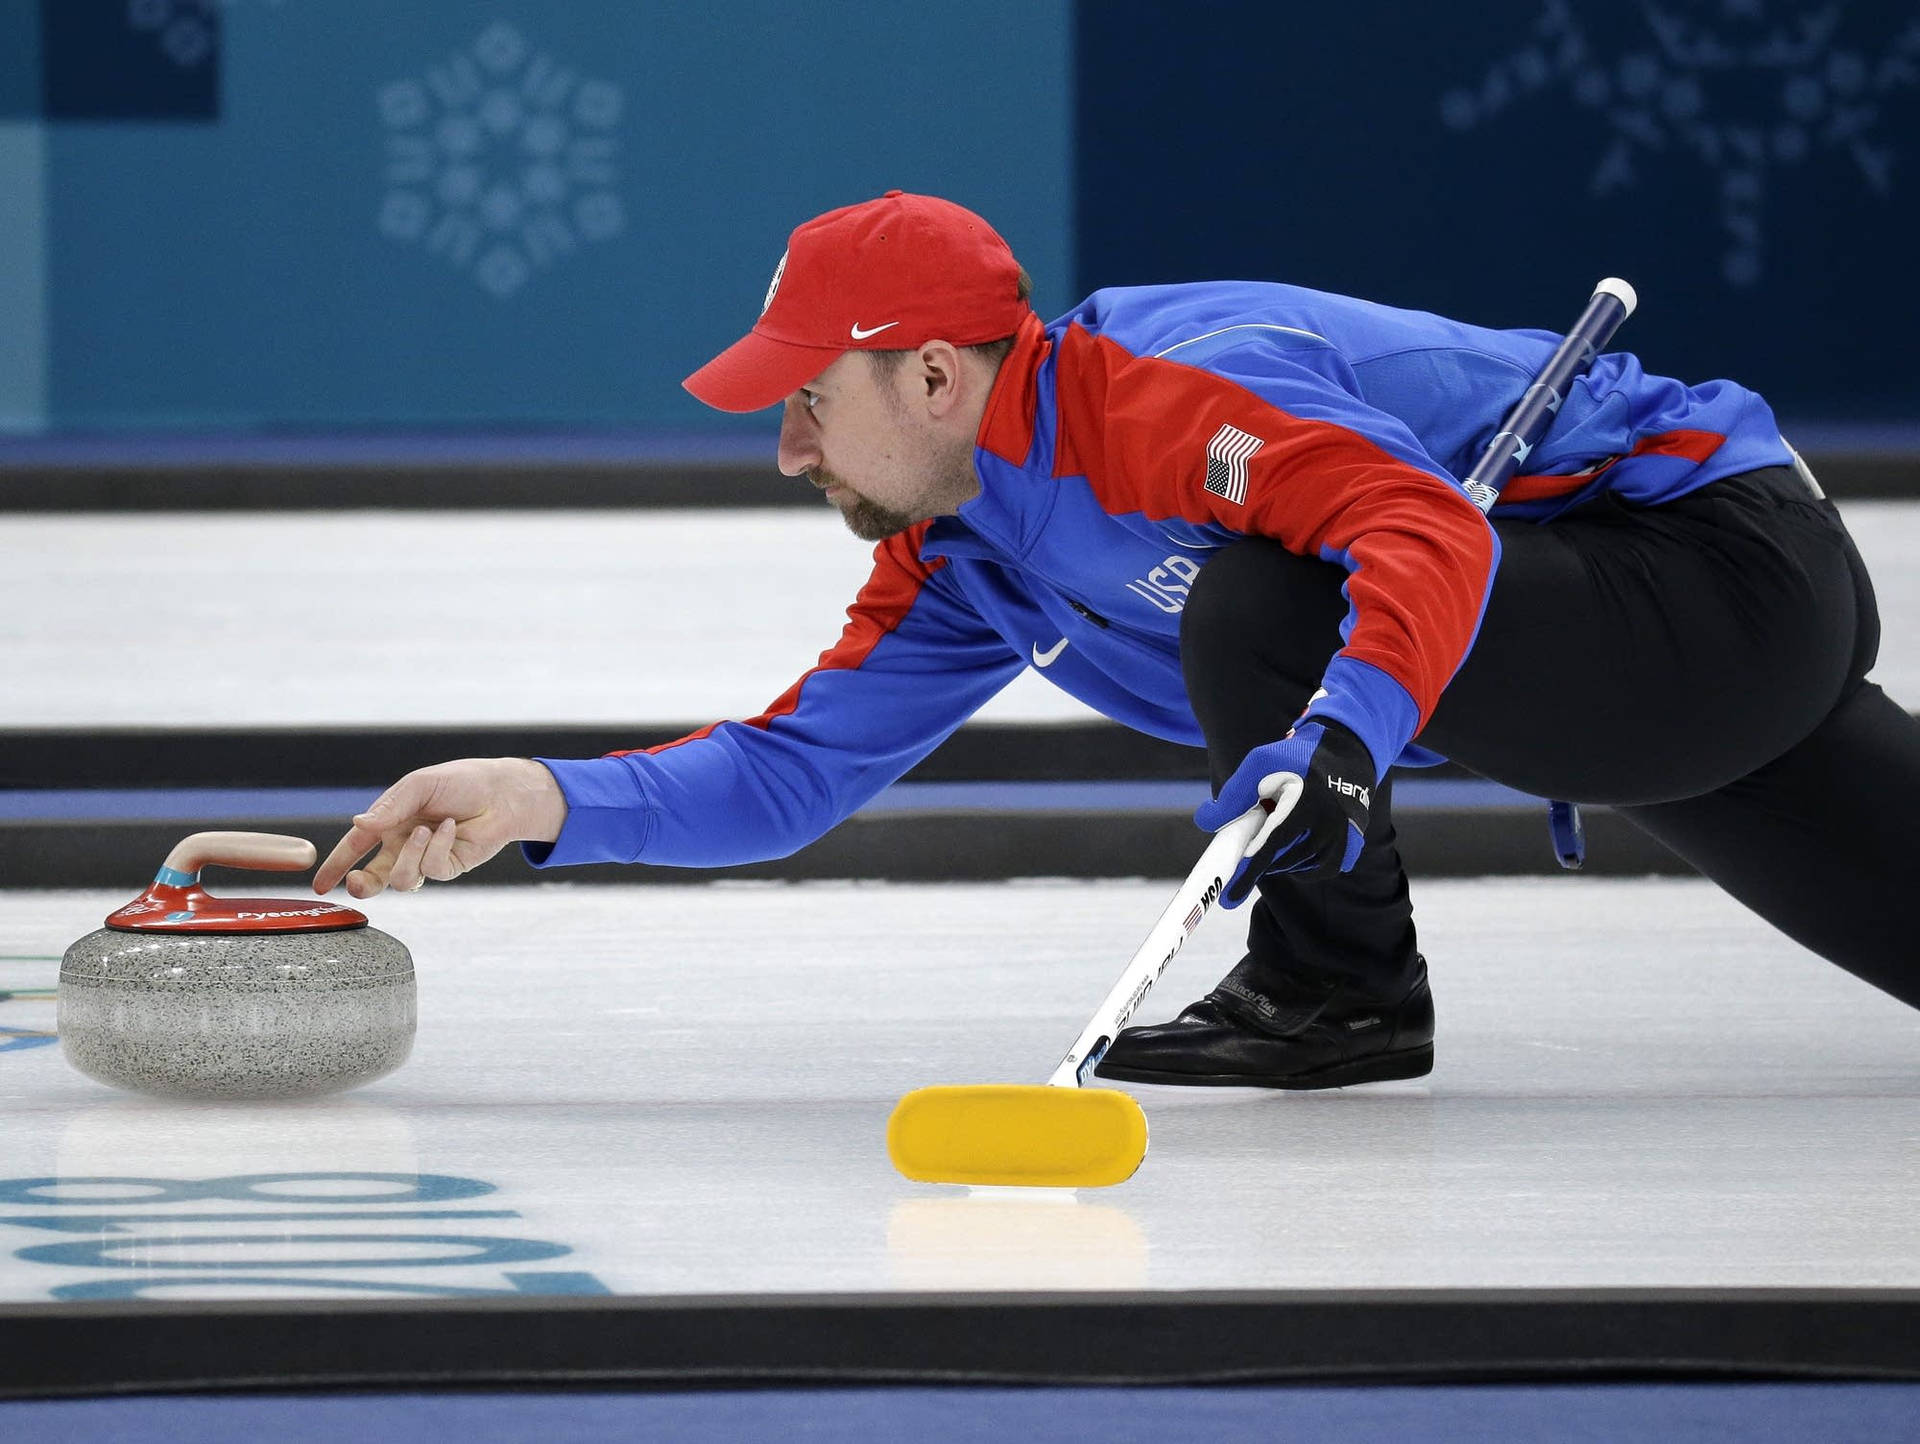 Atleter Glider Stenene I Curling Sender Vibrationer Af Kraft Wallpaper